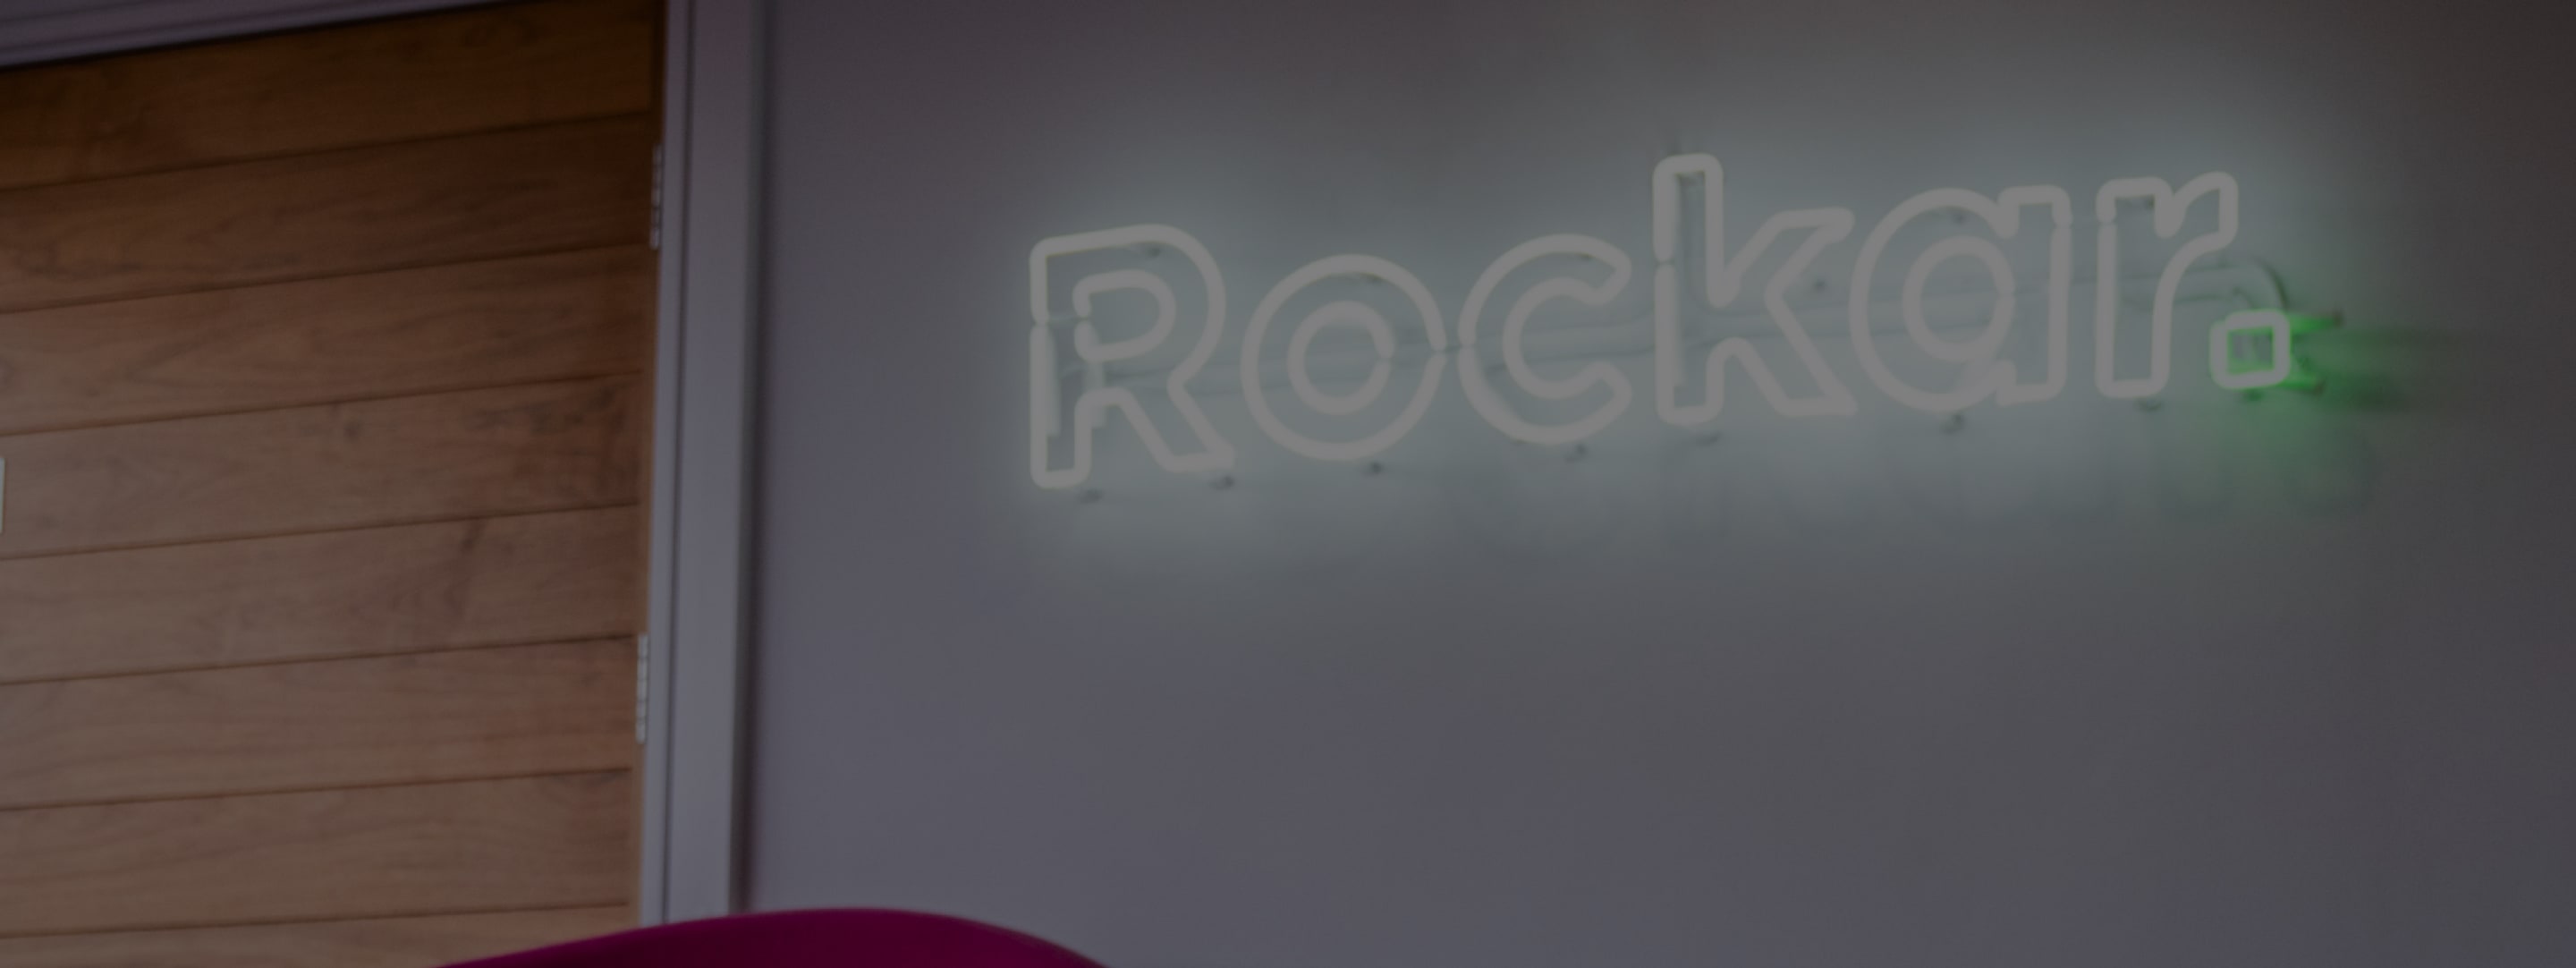 Rockar Logo in Neon on Office Wall